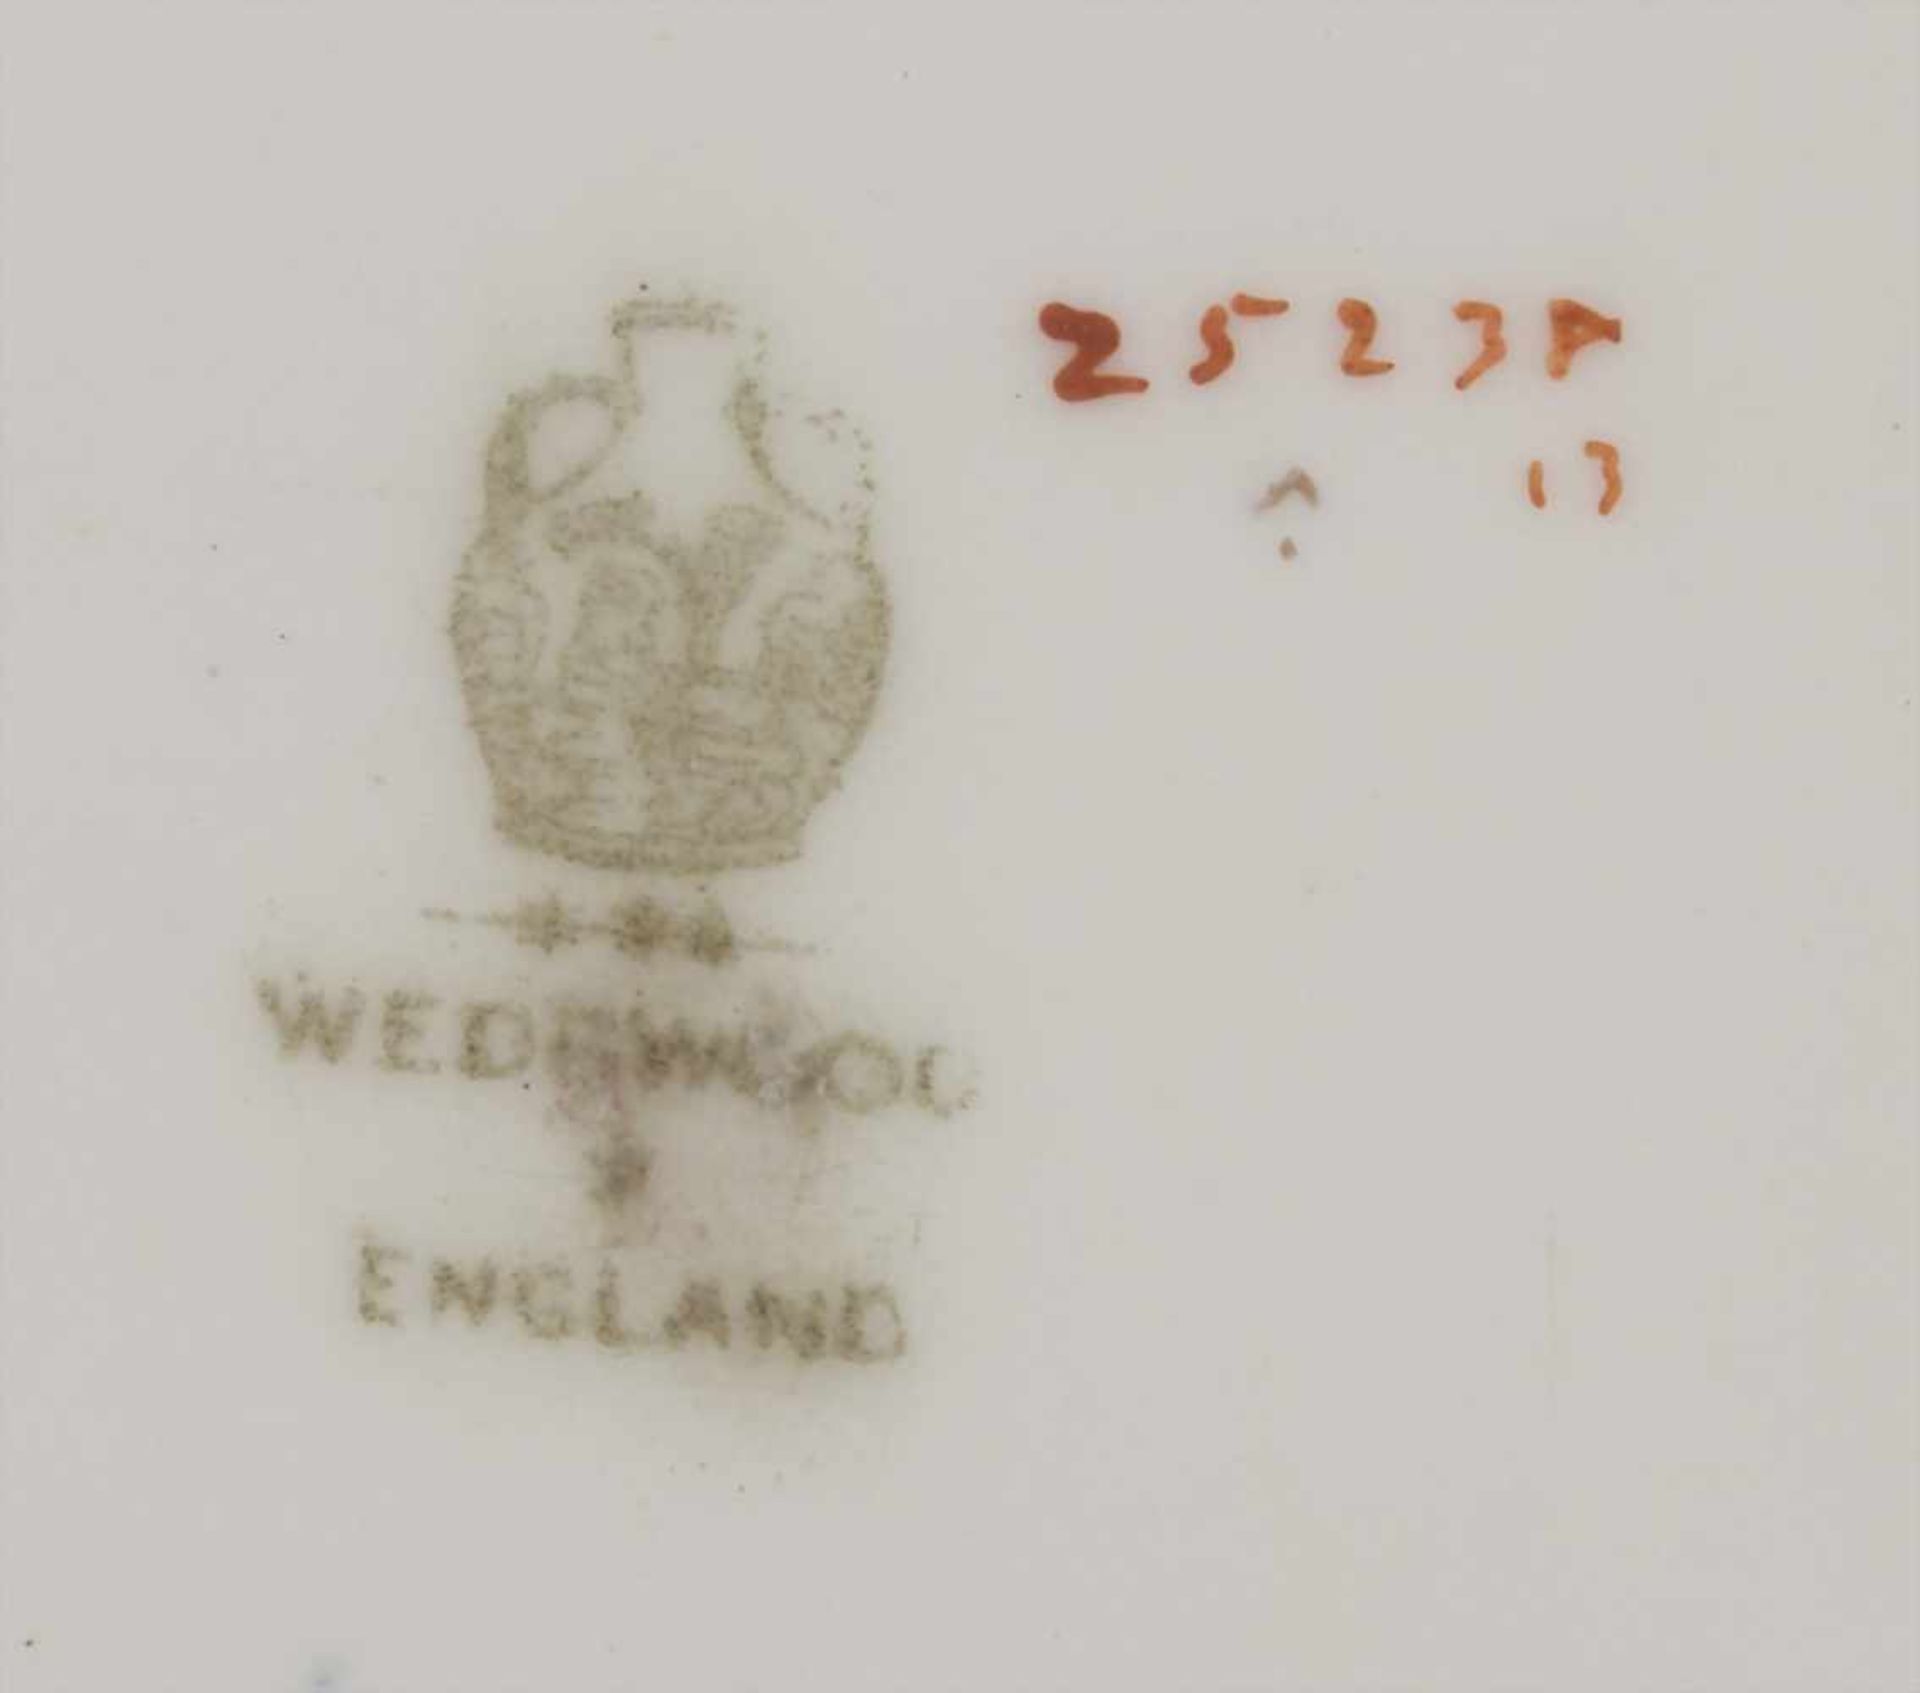 3tlg. Schreibtischset / A 3-pieces writing set, Wedgwood, 1919Material: Porzellan, farbig staffiert, - Bild 6 aus 6